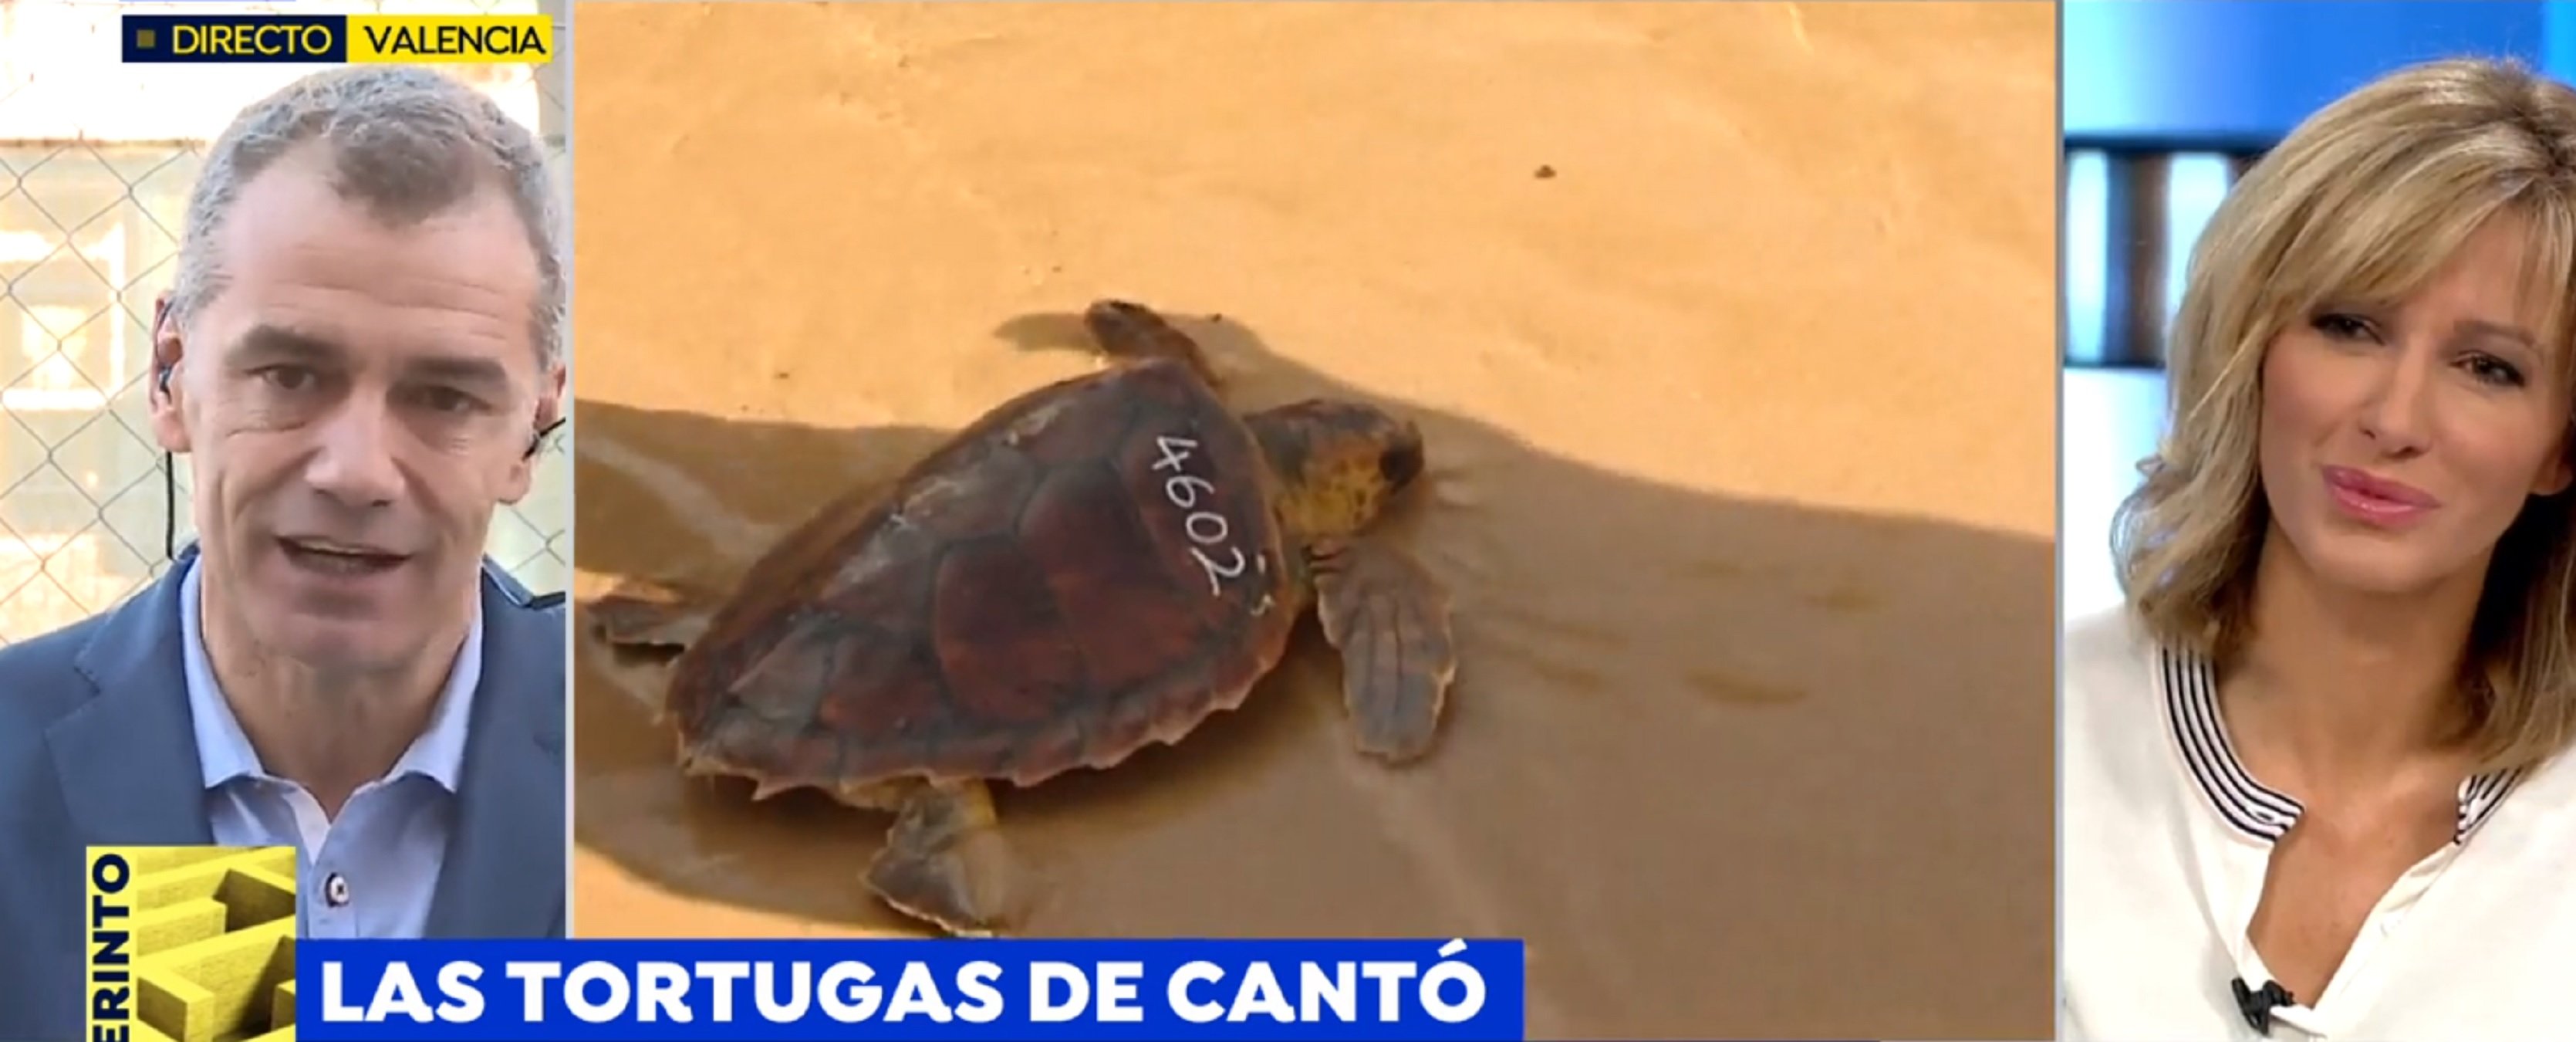 Toni Cantó, denunciat per tenir 40 tortugues: "Tengo muchos bichos en casa"